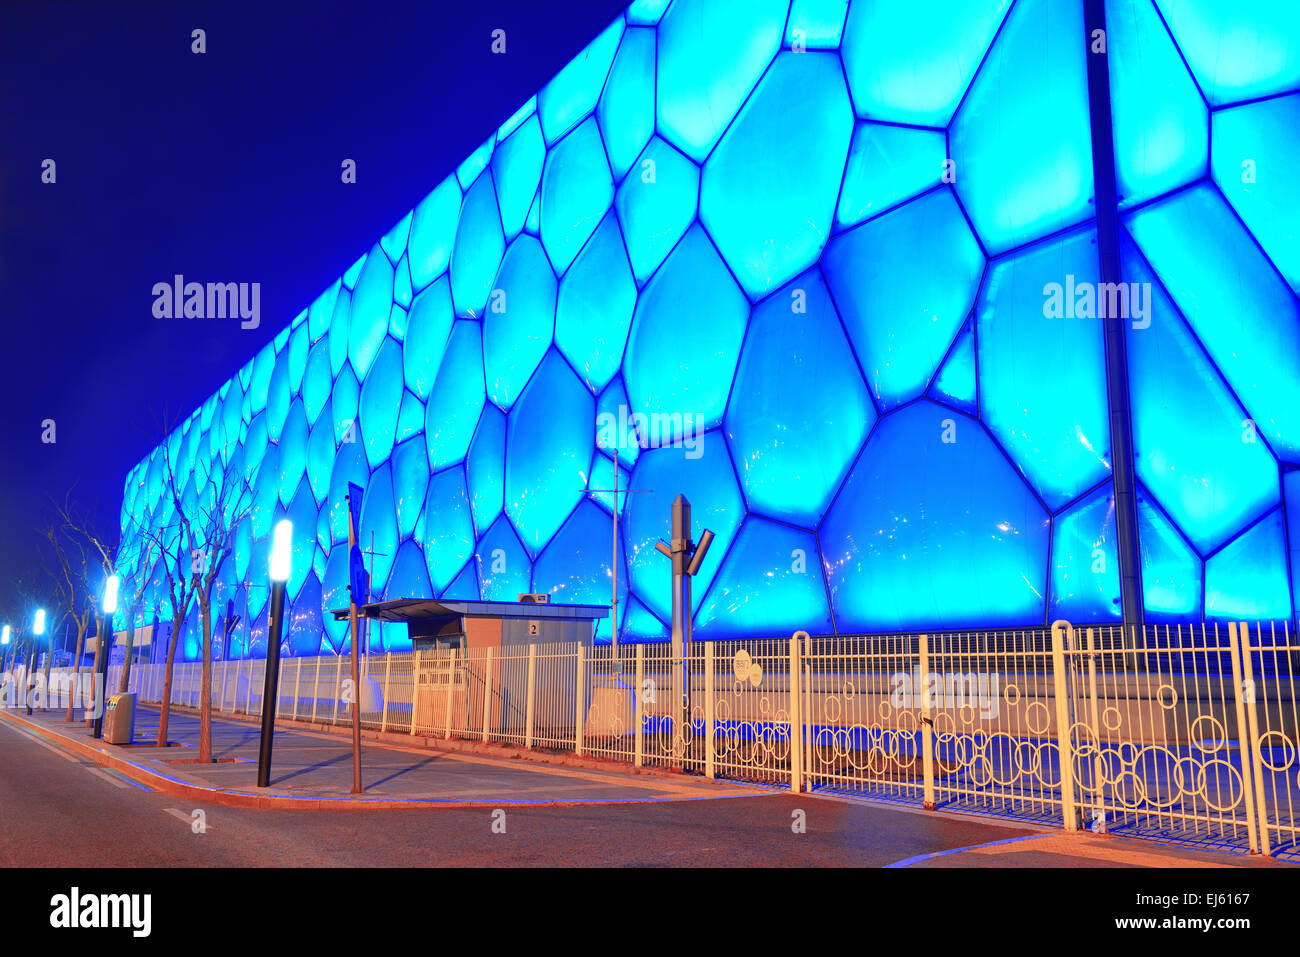 BEIJING, CHINE - 7 AVR : centre national de natation de Pékin la nuit le 7 avril 2013 à Beijing, Chine. Le centre a été établi pour l'été 2008 Jeux Olympiques et Paralympiques. Banque D'Images